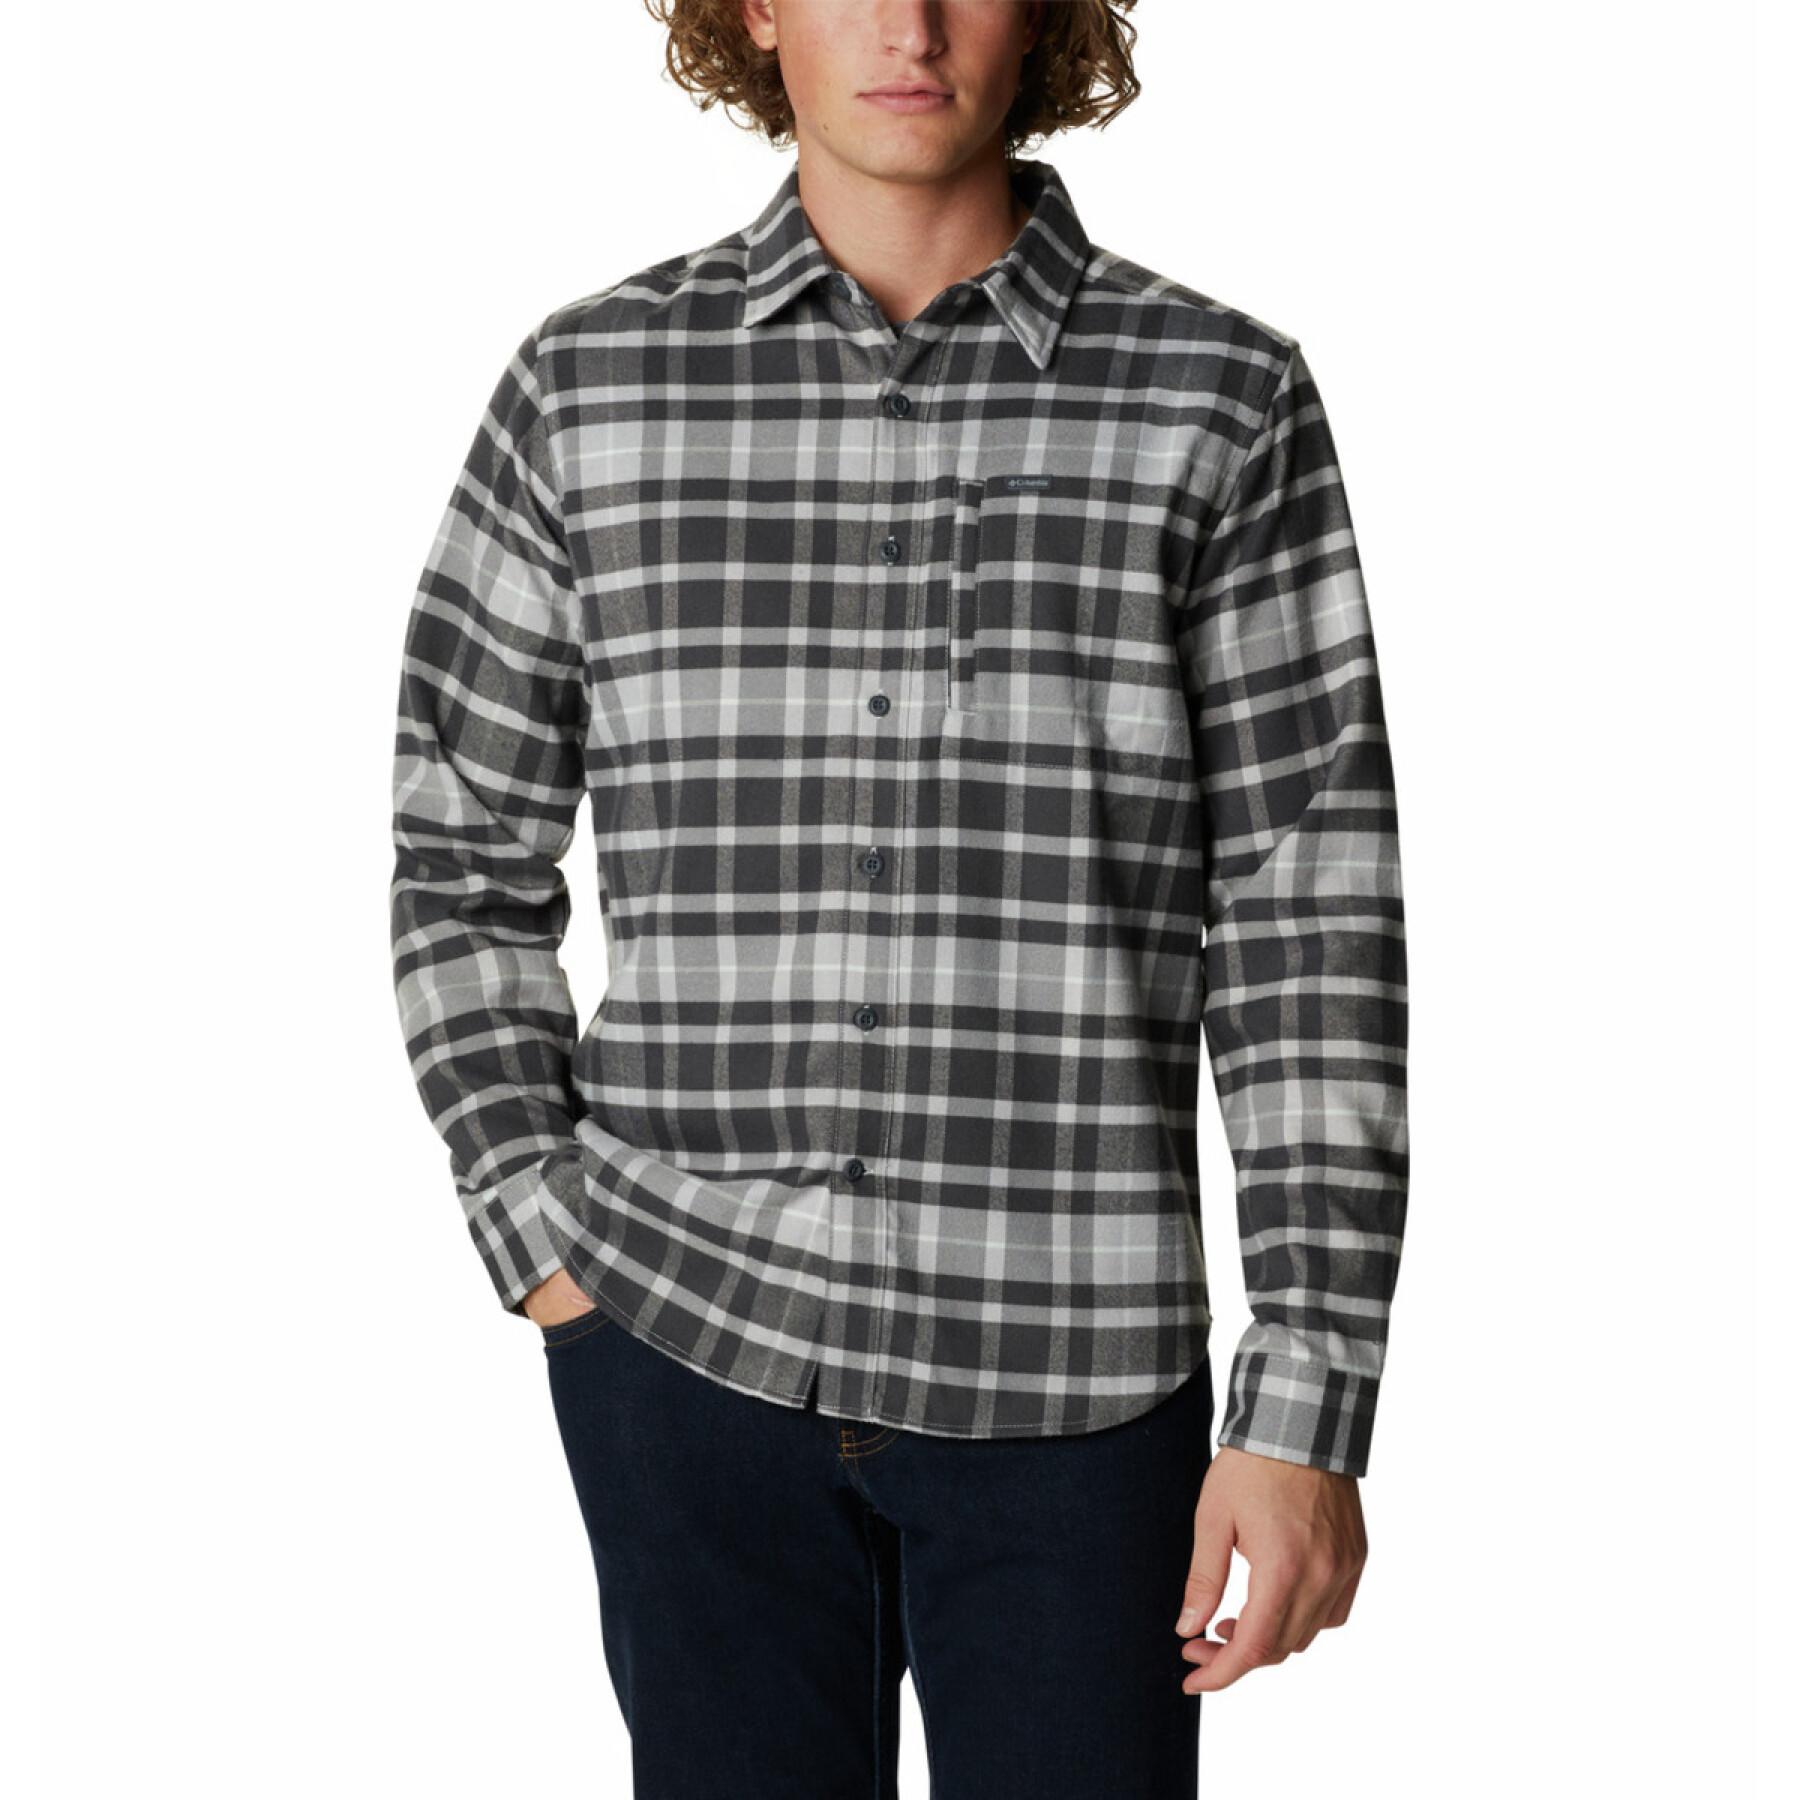 Camisa Columbia Outdoor Elements II Flannel